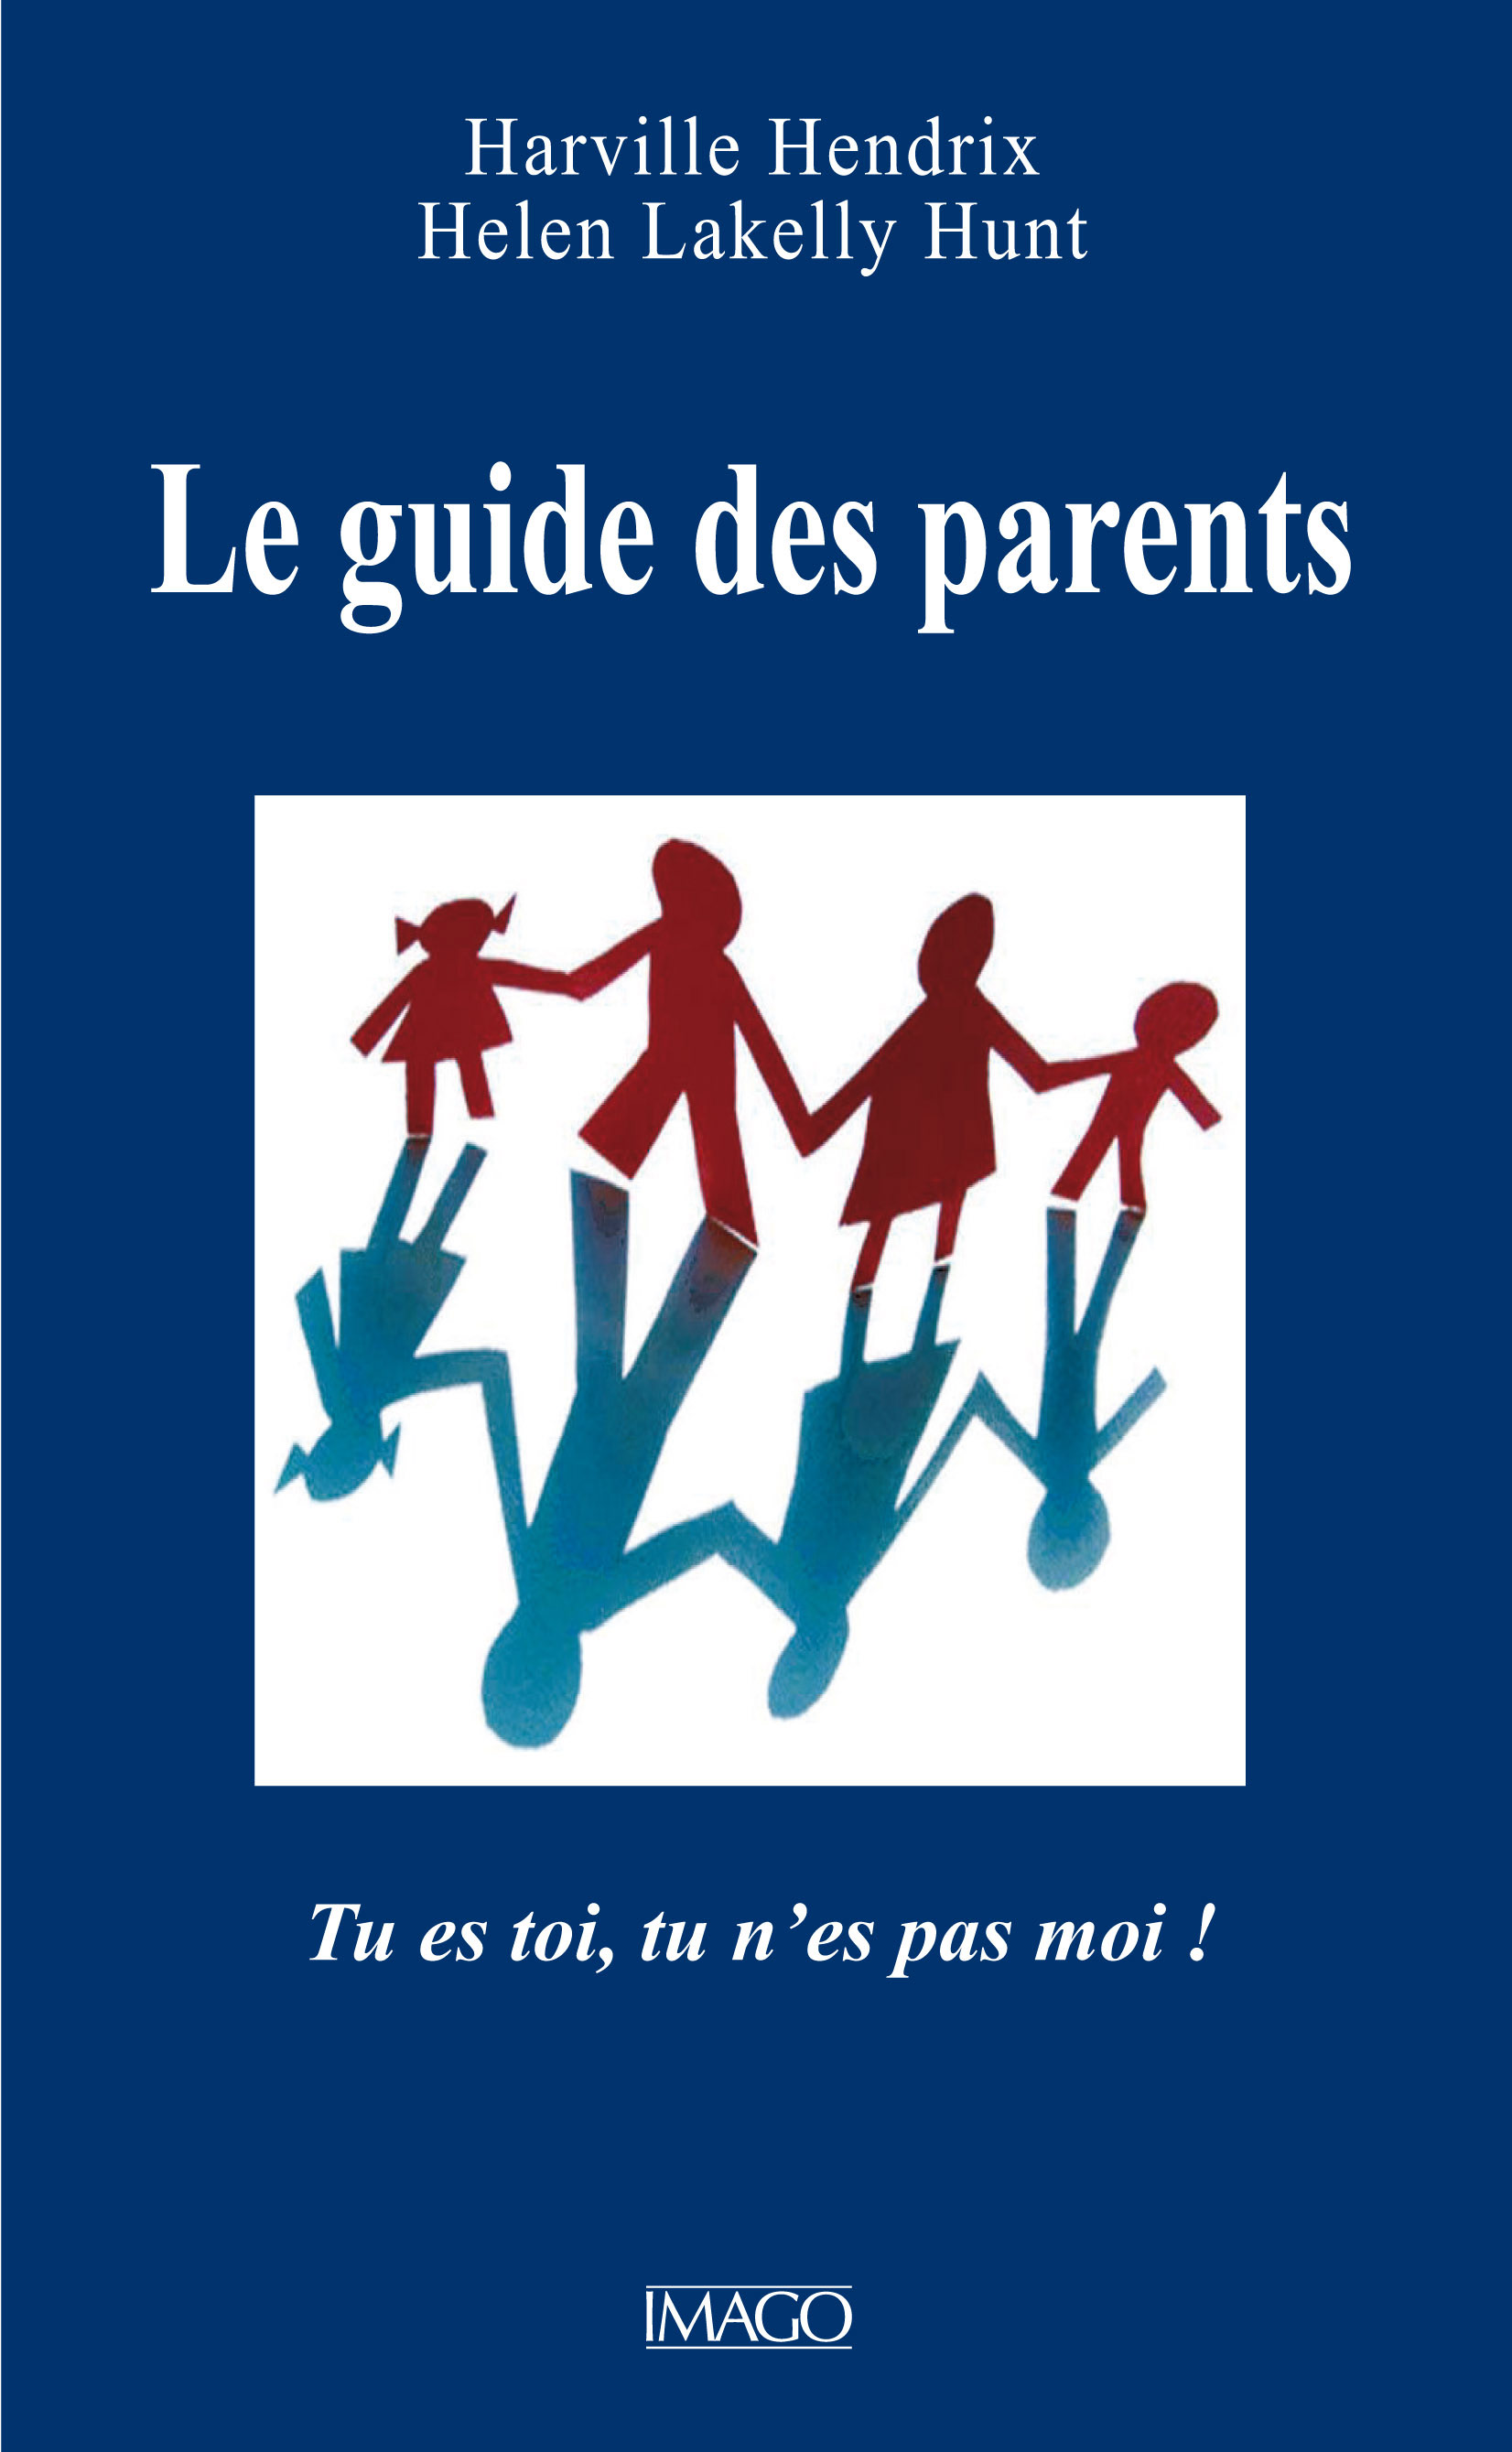 Le Guide des parents